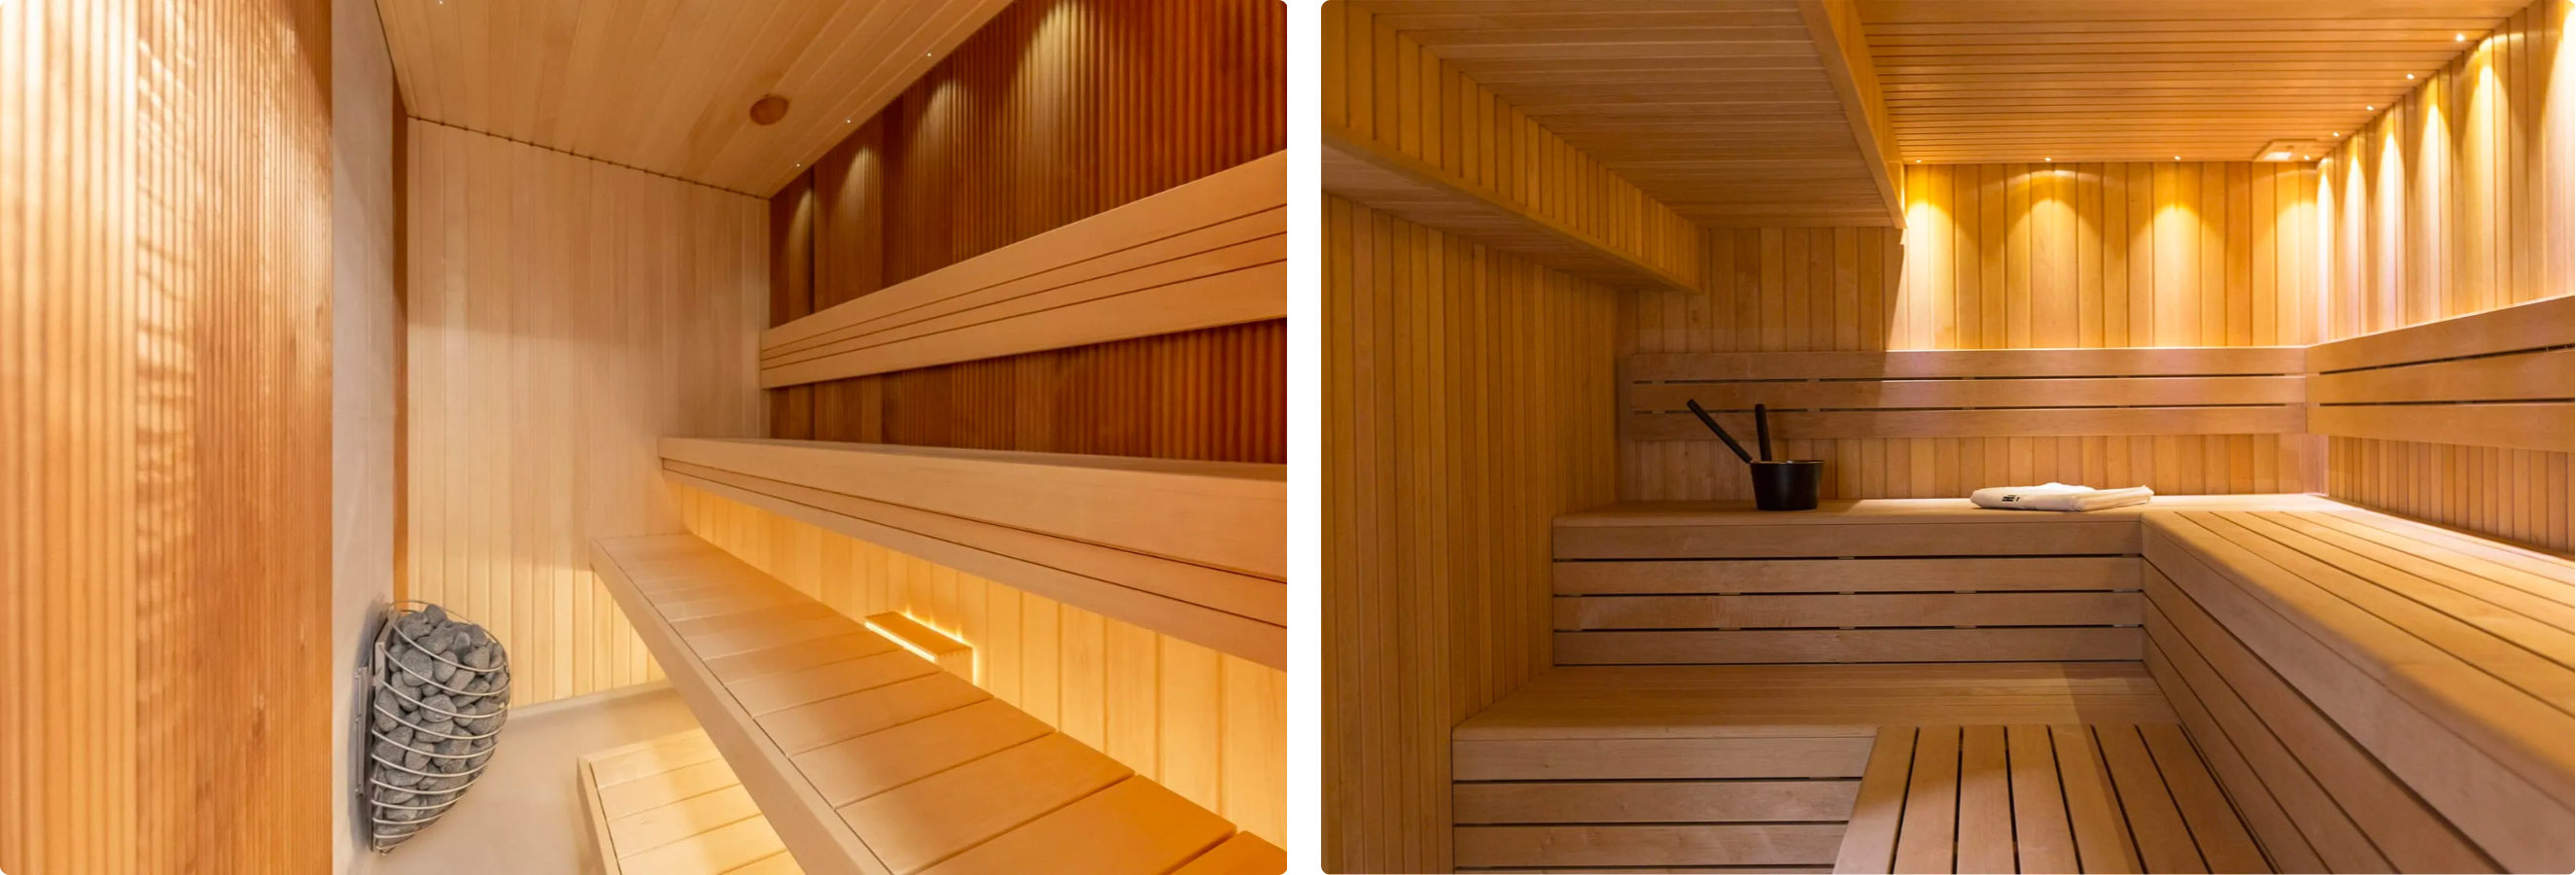 Sauna Room Interior